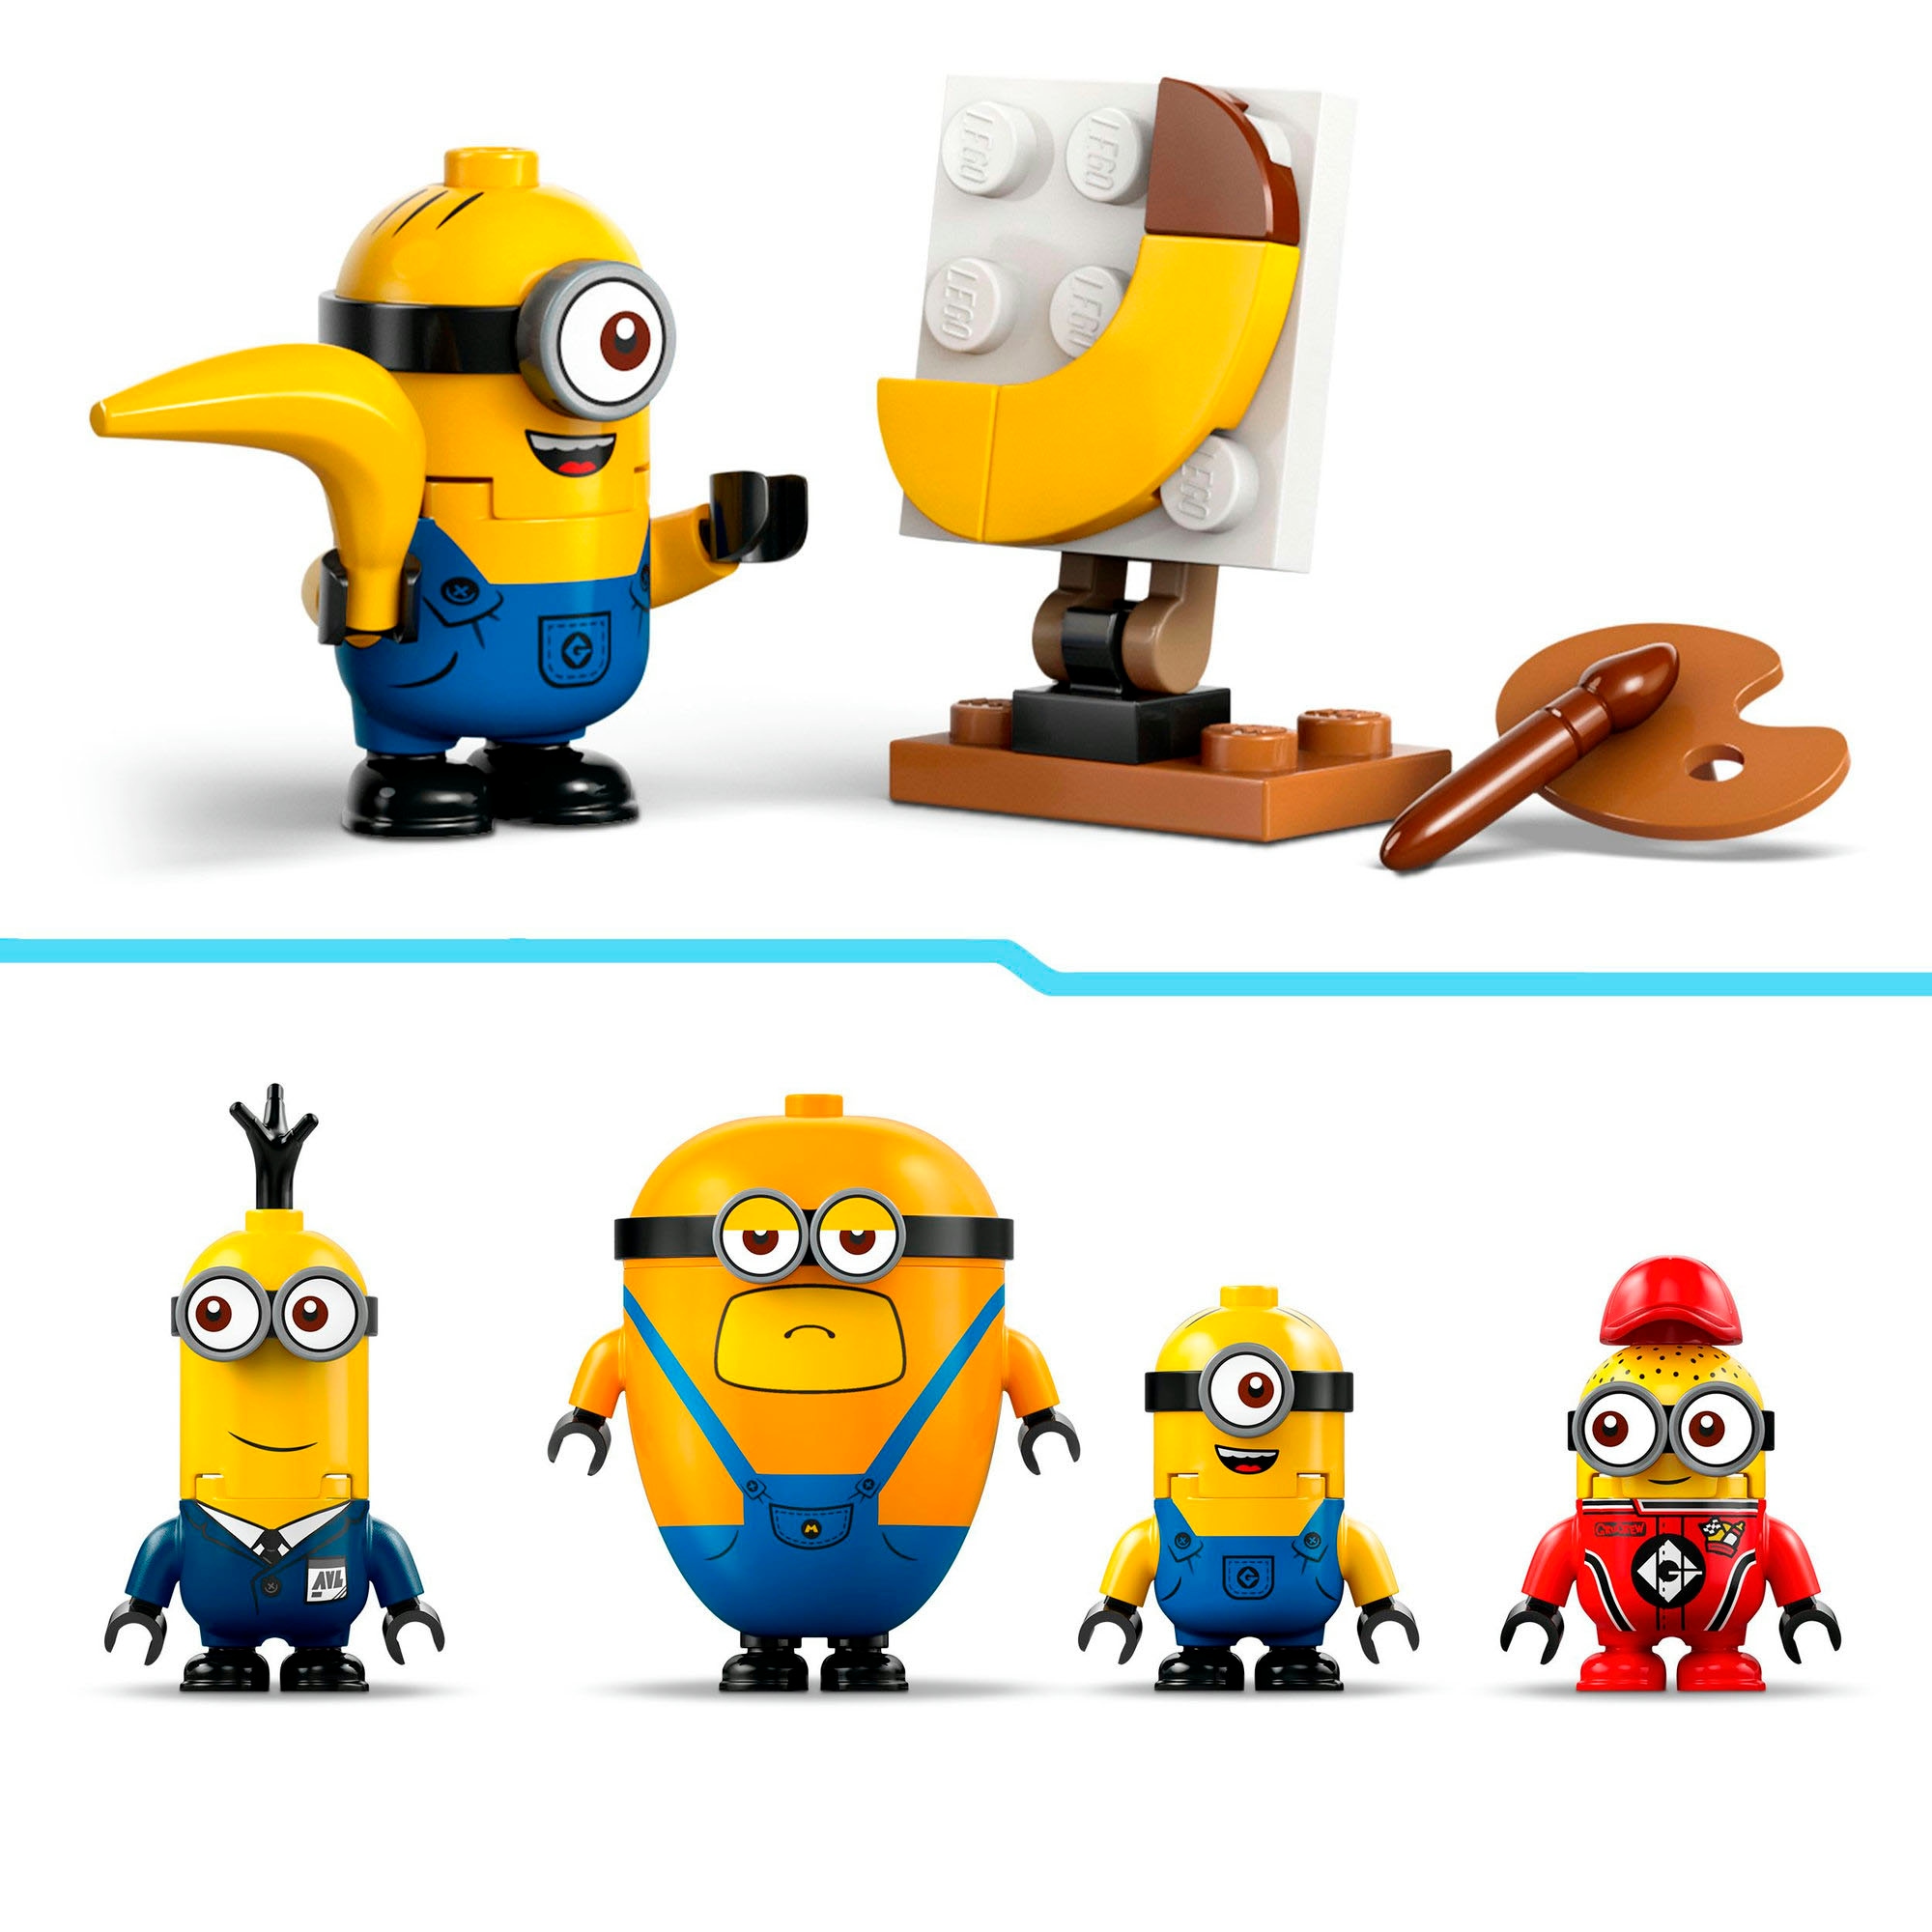 LEGO® Konstruktionsspielsteine »Minions und das Bananen Auto (75580), LEGO Despicable Me«, (136 St.), Made in Europe